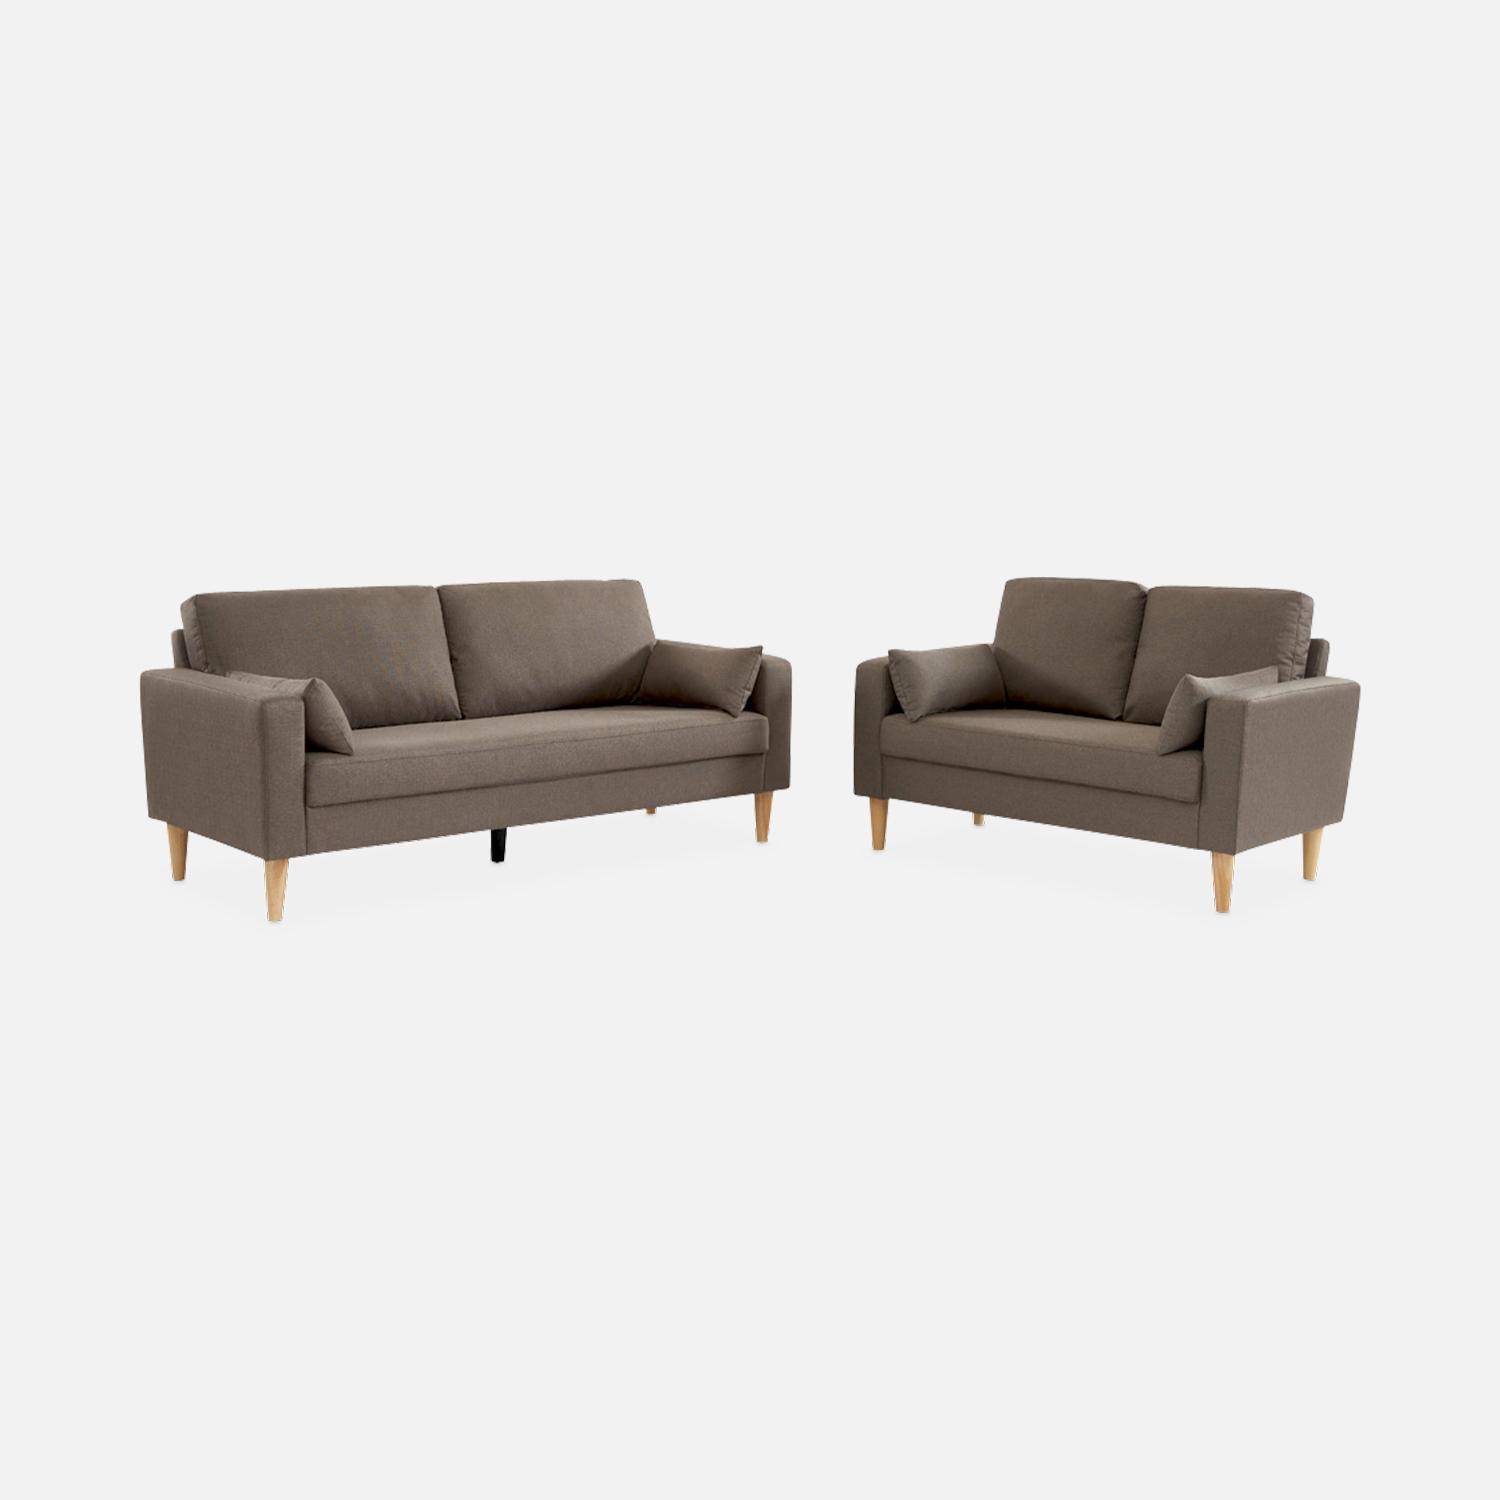 2-Sitz Sofa - Bjorn 2 - Braun, Gestell aus Eukalyptus, Bezug aus Polyester, Holzbeine, Sofa im skandinavischen Stil  Photo5